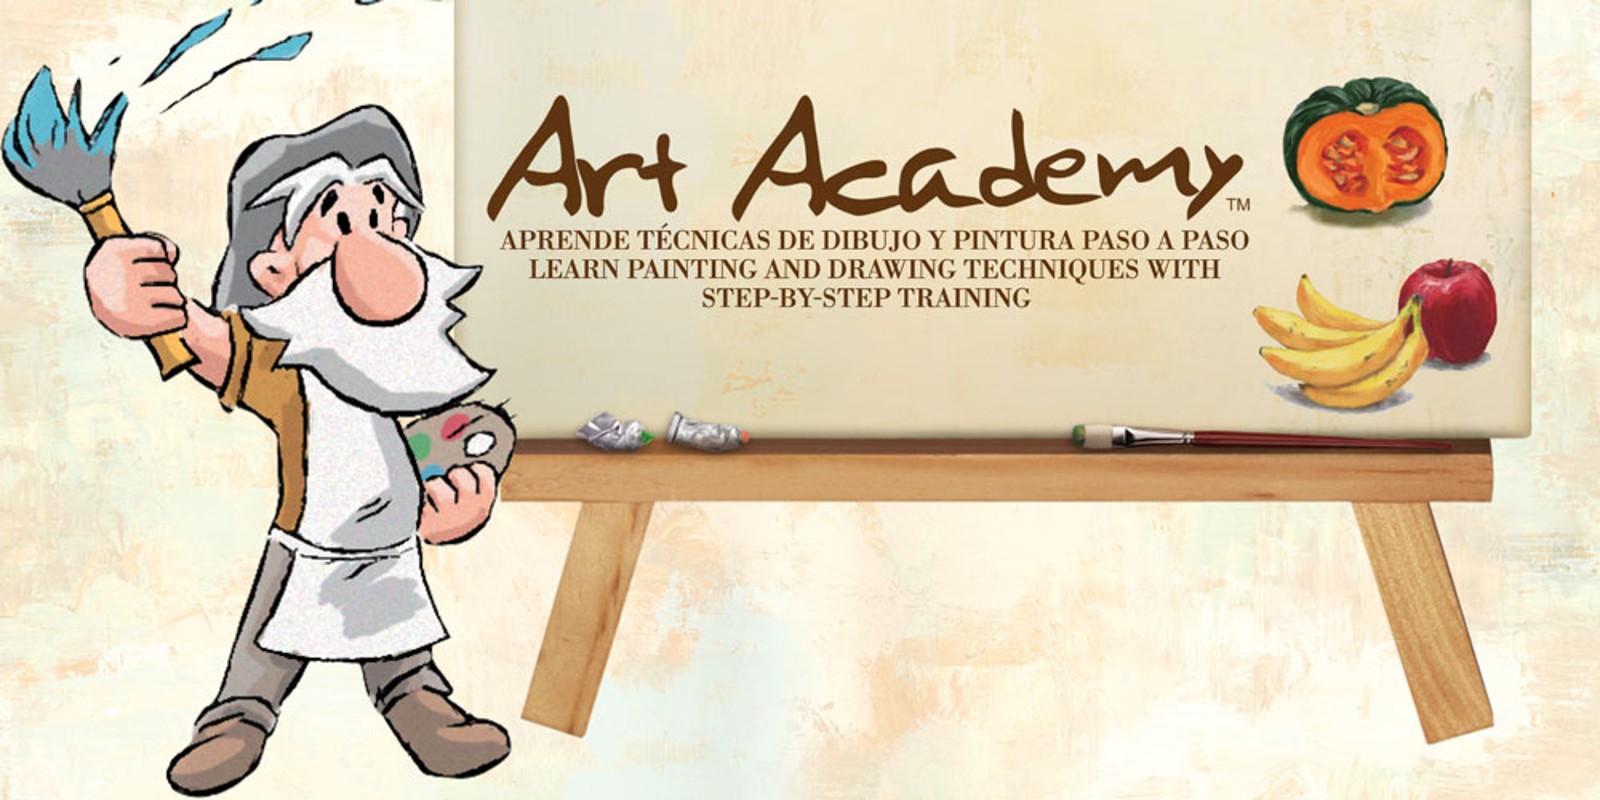 Art Academy: Aprende técnicas de dibujo y pintura paso a paso